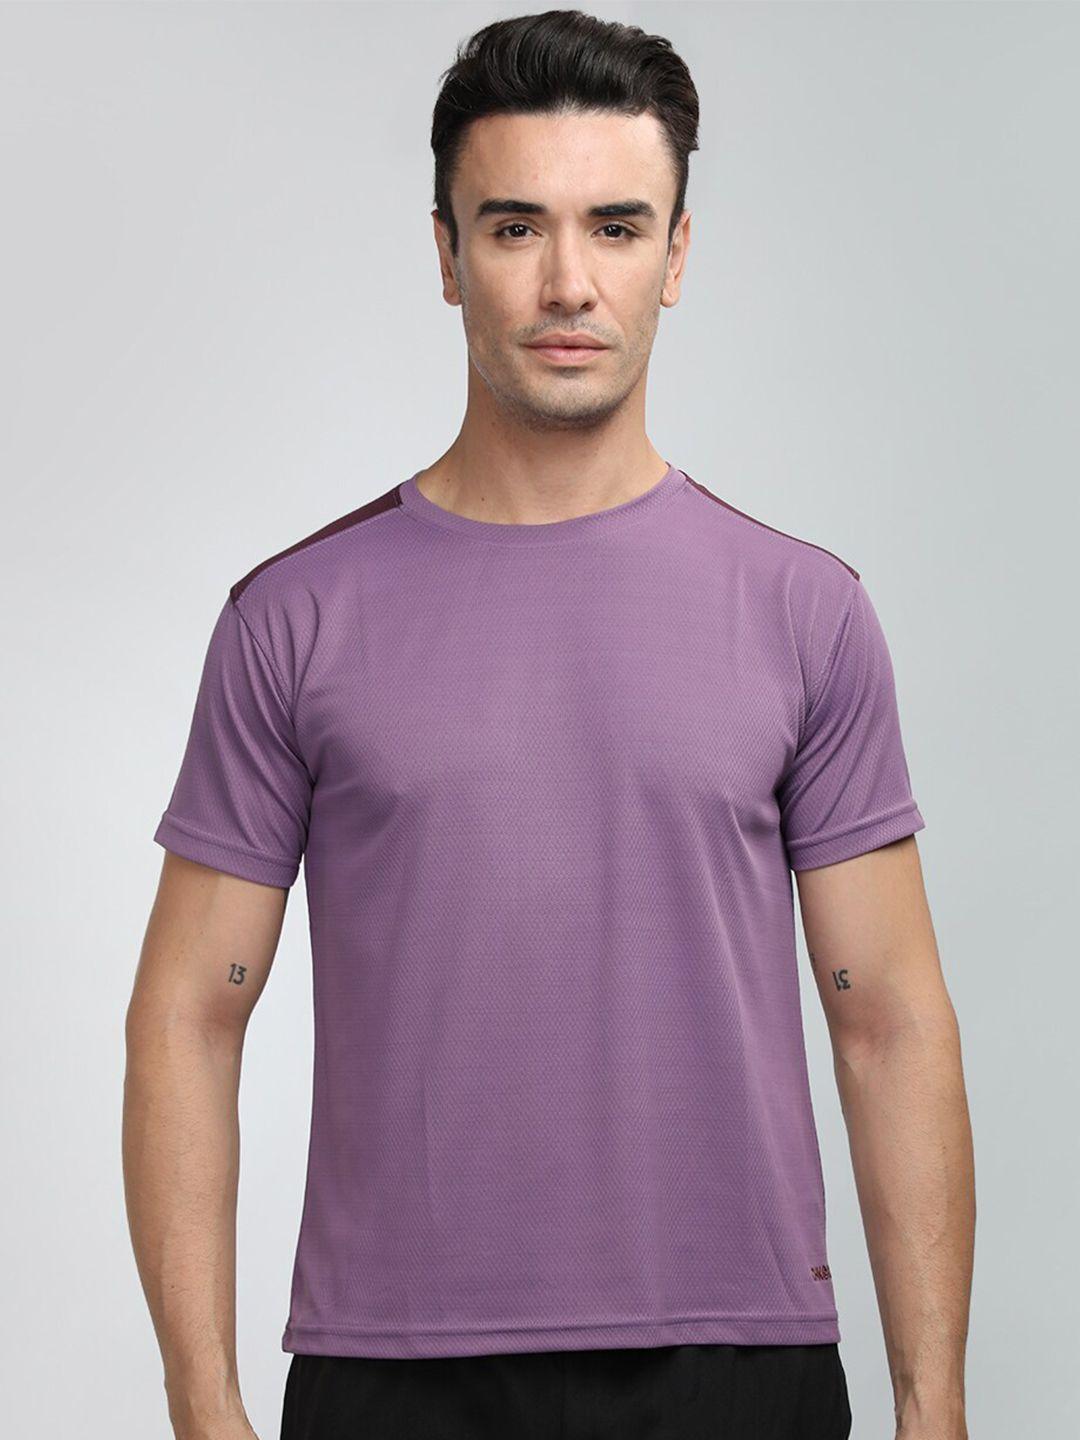 chkokko round neck short sleeves sports t-shirt